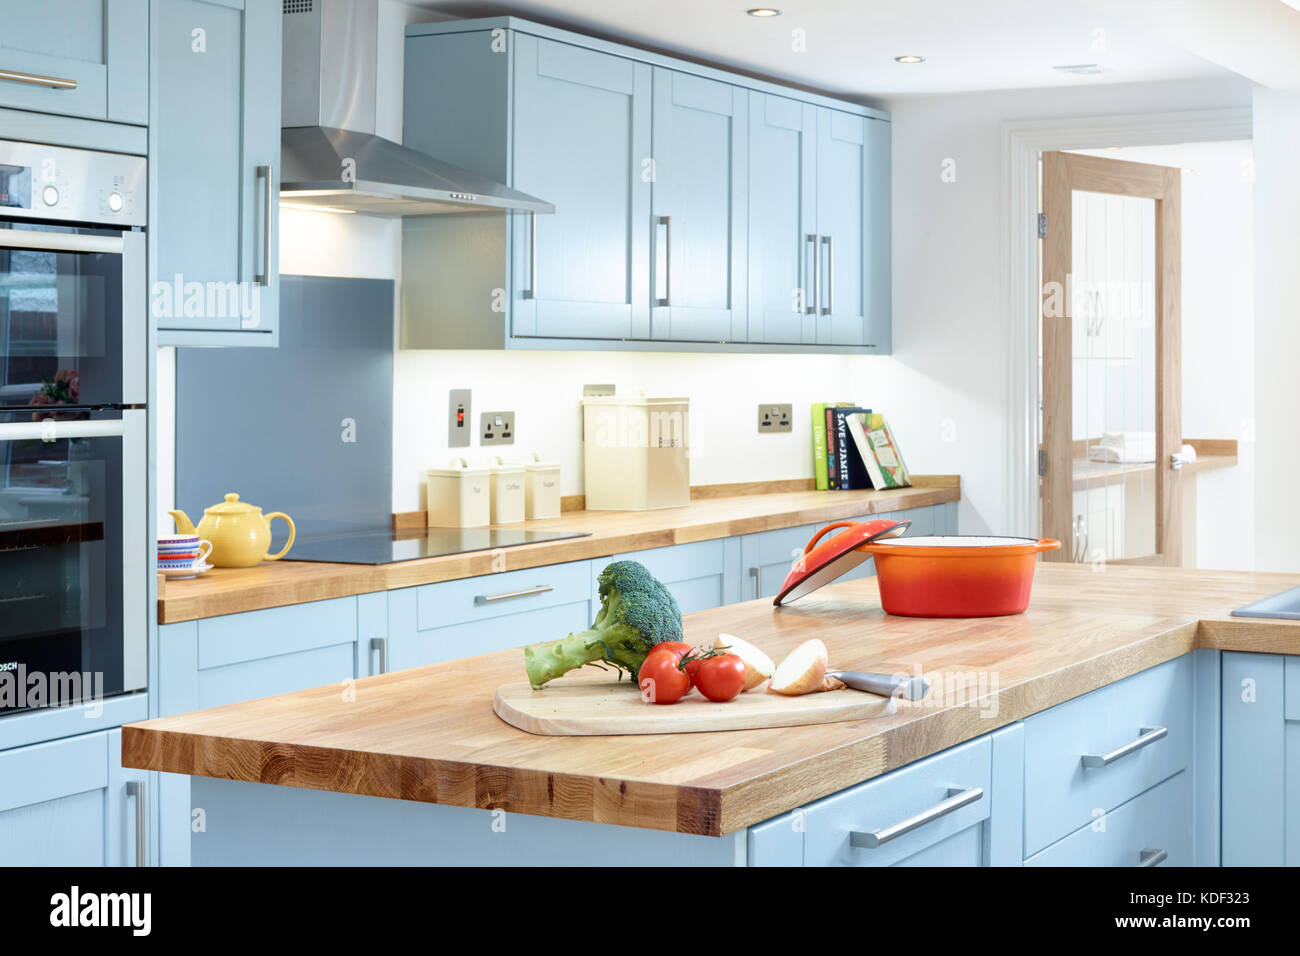 Eine neue, moderne, blau, Shaker style Designer Küche, Schränke, Geräte und Zähler nach oben. Mit etwas essen Vorbereitung Stockfoto